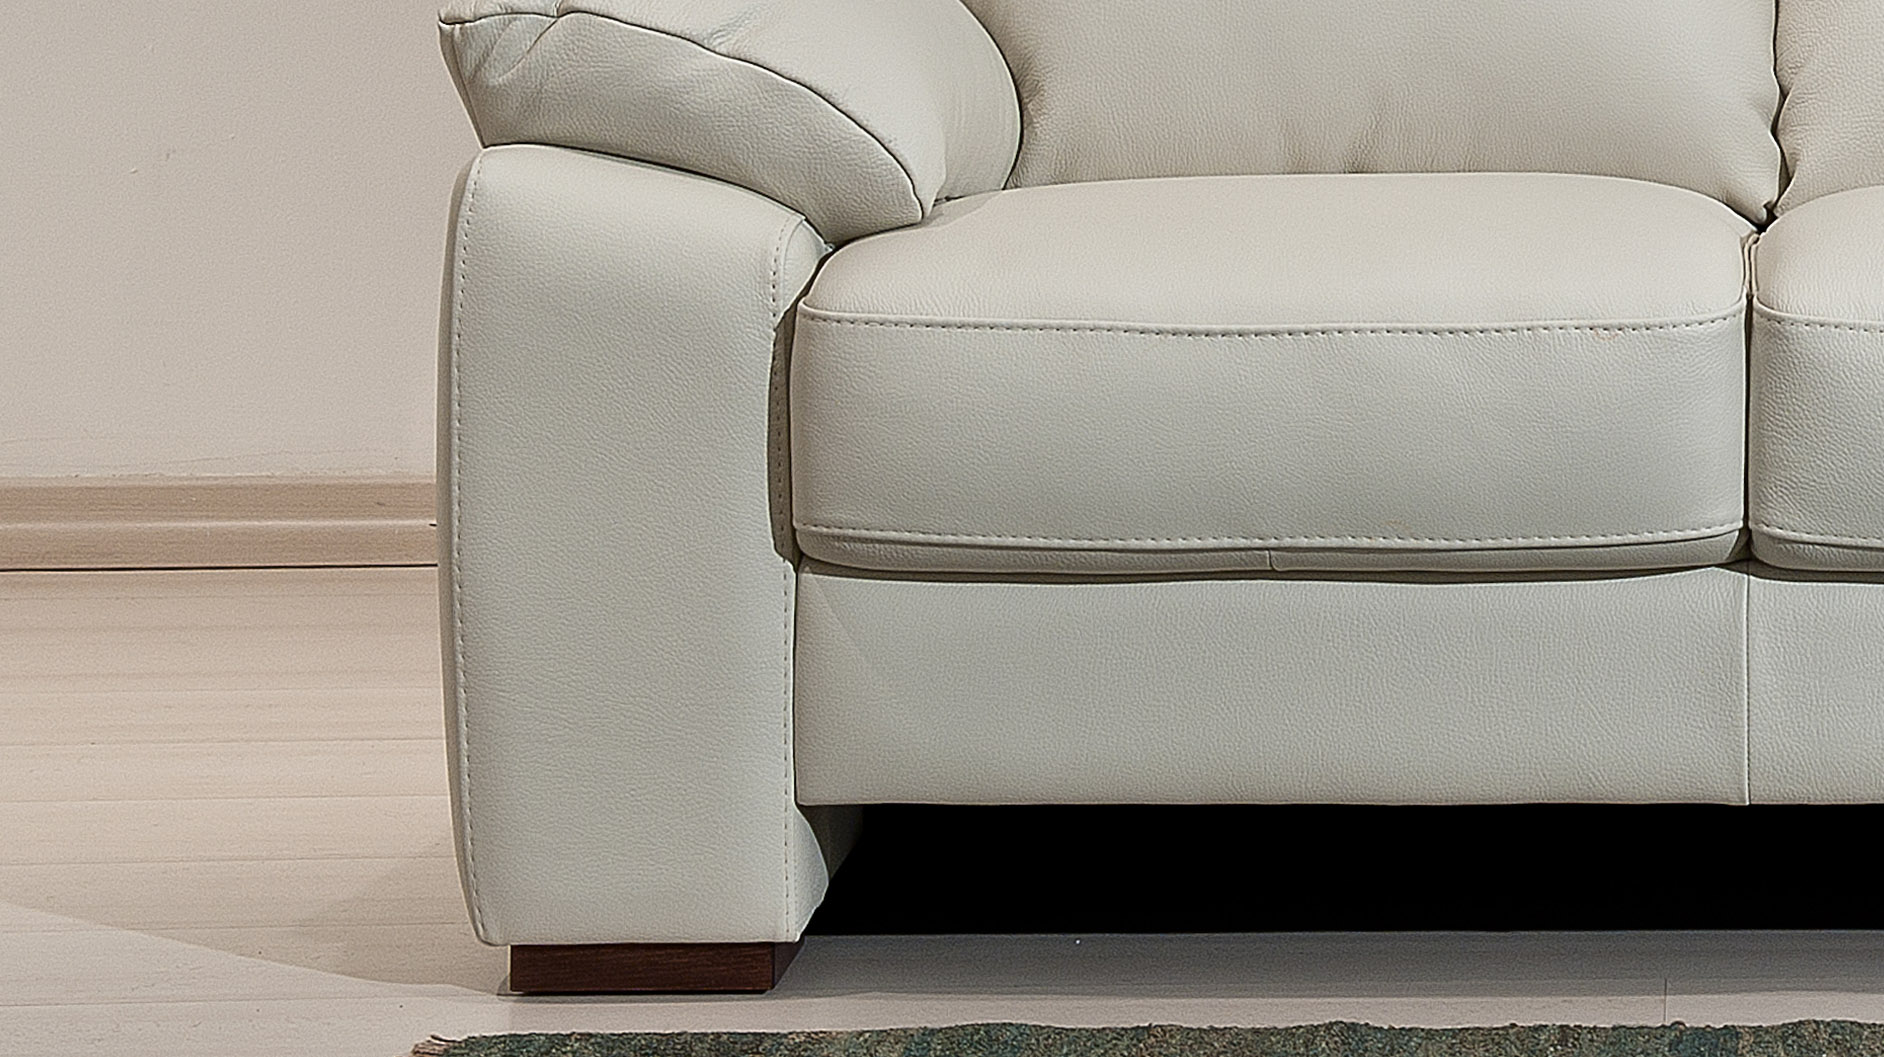 White Elegant Leather Sofa Set with Throw Pillows - Click Image to Close